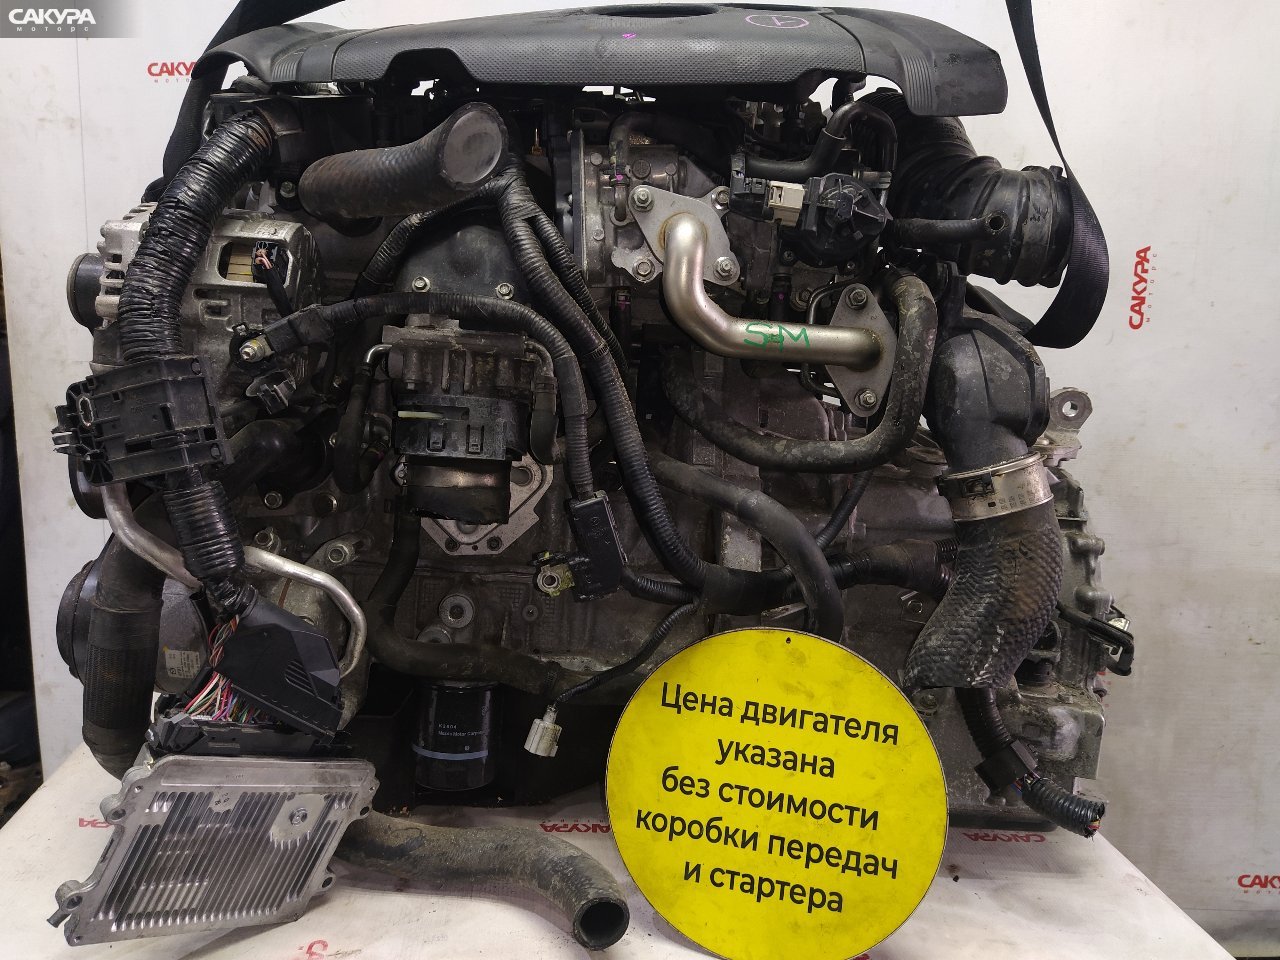 Двигатель Mazda CX-5 KE2AW SH-VPTS: купить в Сакура Красноярск.